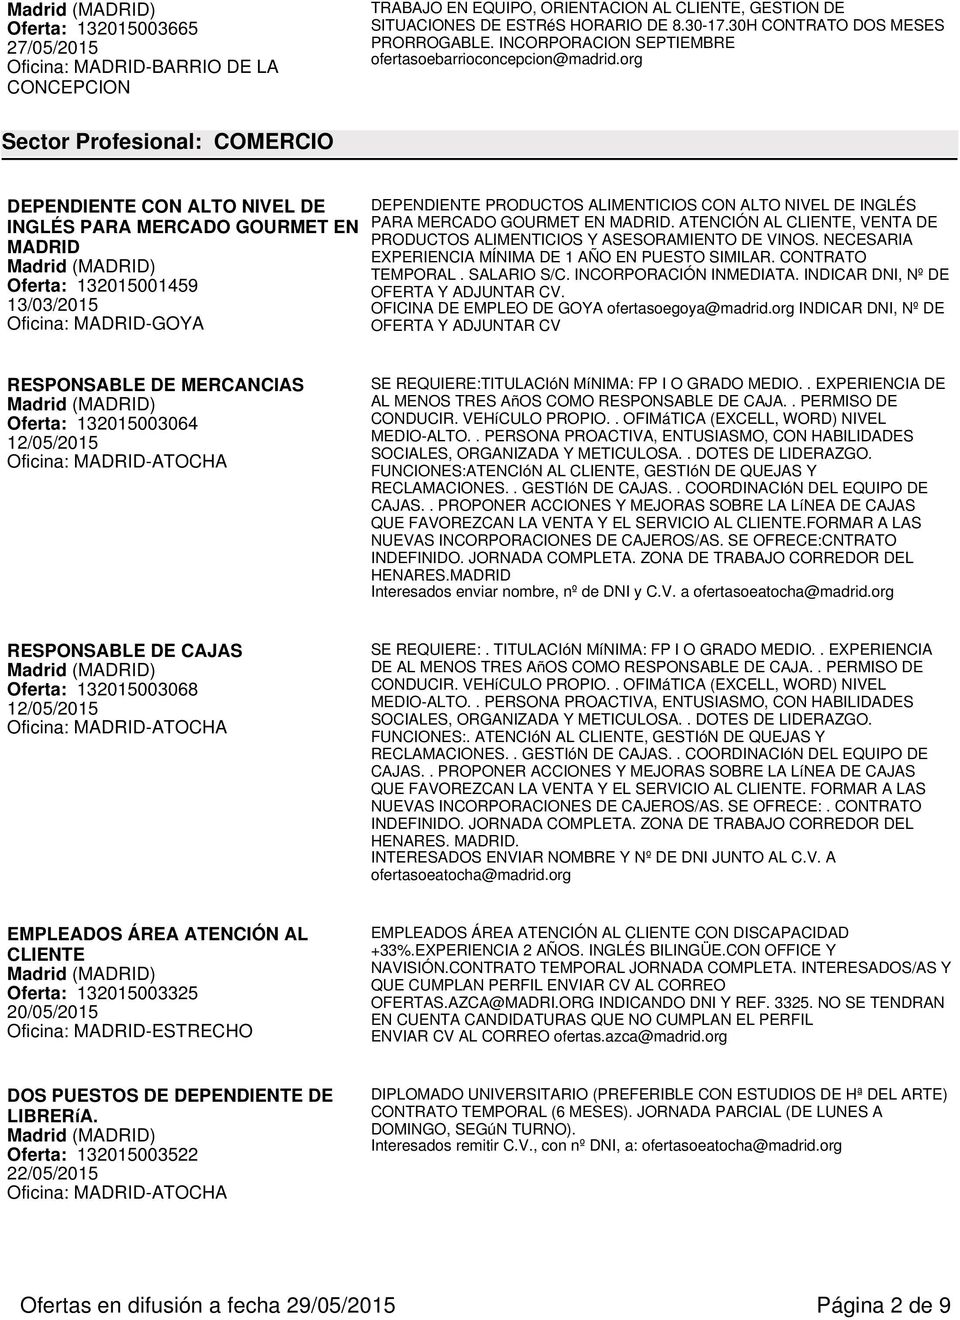 org Sector Profesional: COMERCIO DEPENDIENTE CON ALTO NIVEL DE INGLÉS PARA MERCADO GOURMET EN MADRID Oferta: 132015001459 13/03/2015 DEPENDIENTE PRODUCTOS ALIMENTICIOS CON ALTO NIVEL DE INGLÉS PARA